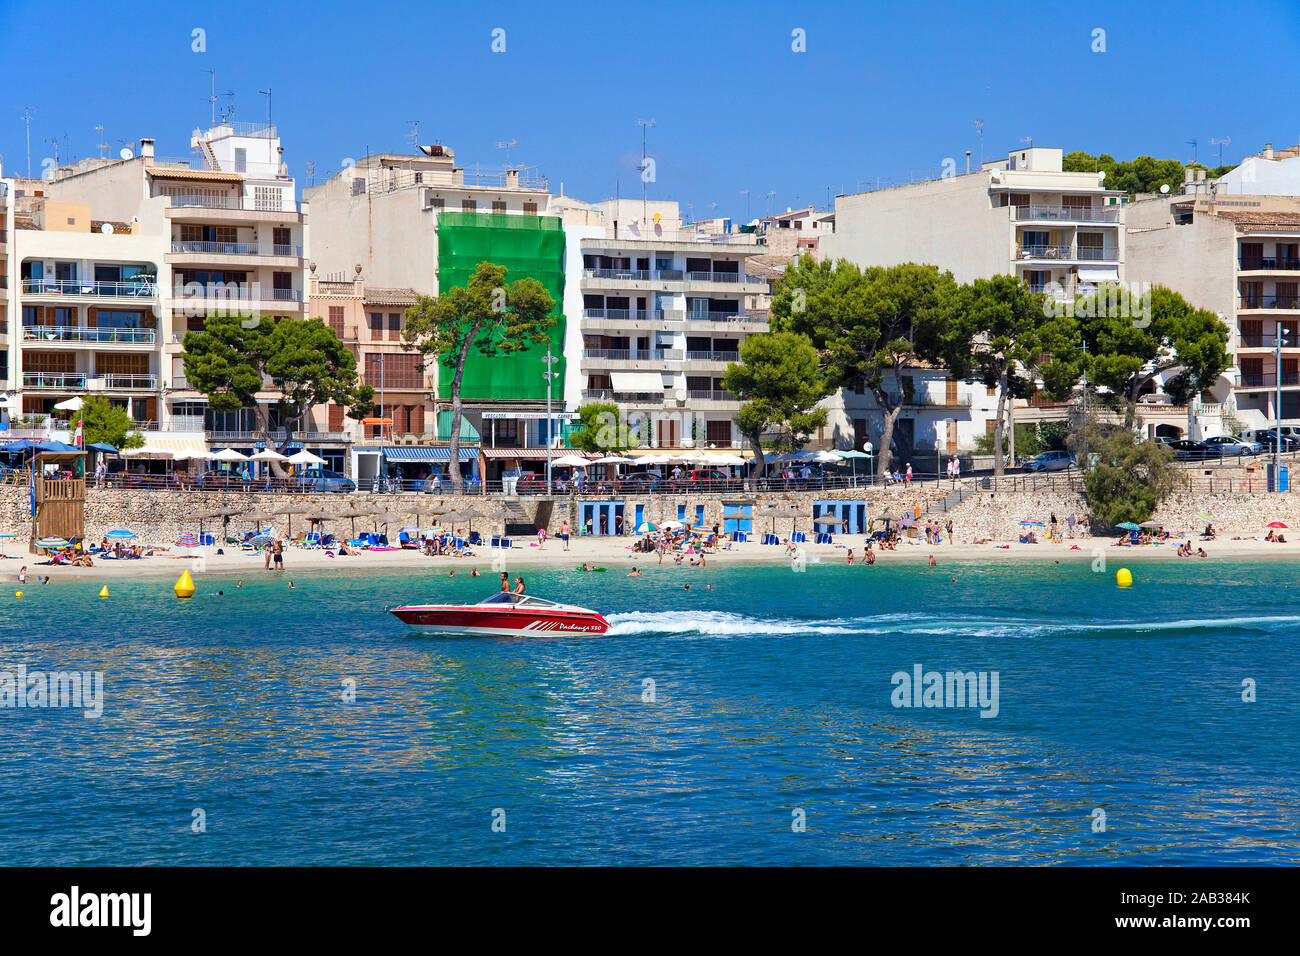 Imbarcazione a motore in spiaggia balneare, Porto Christo, Manacor, Maiorca, isole Baleari, Spagna Foto Stock